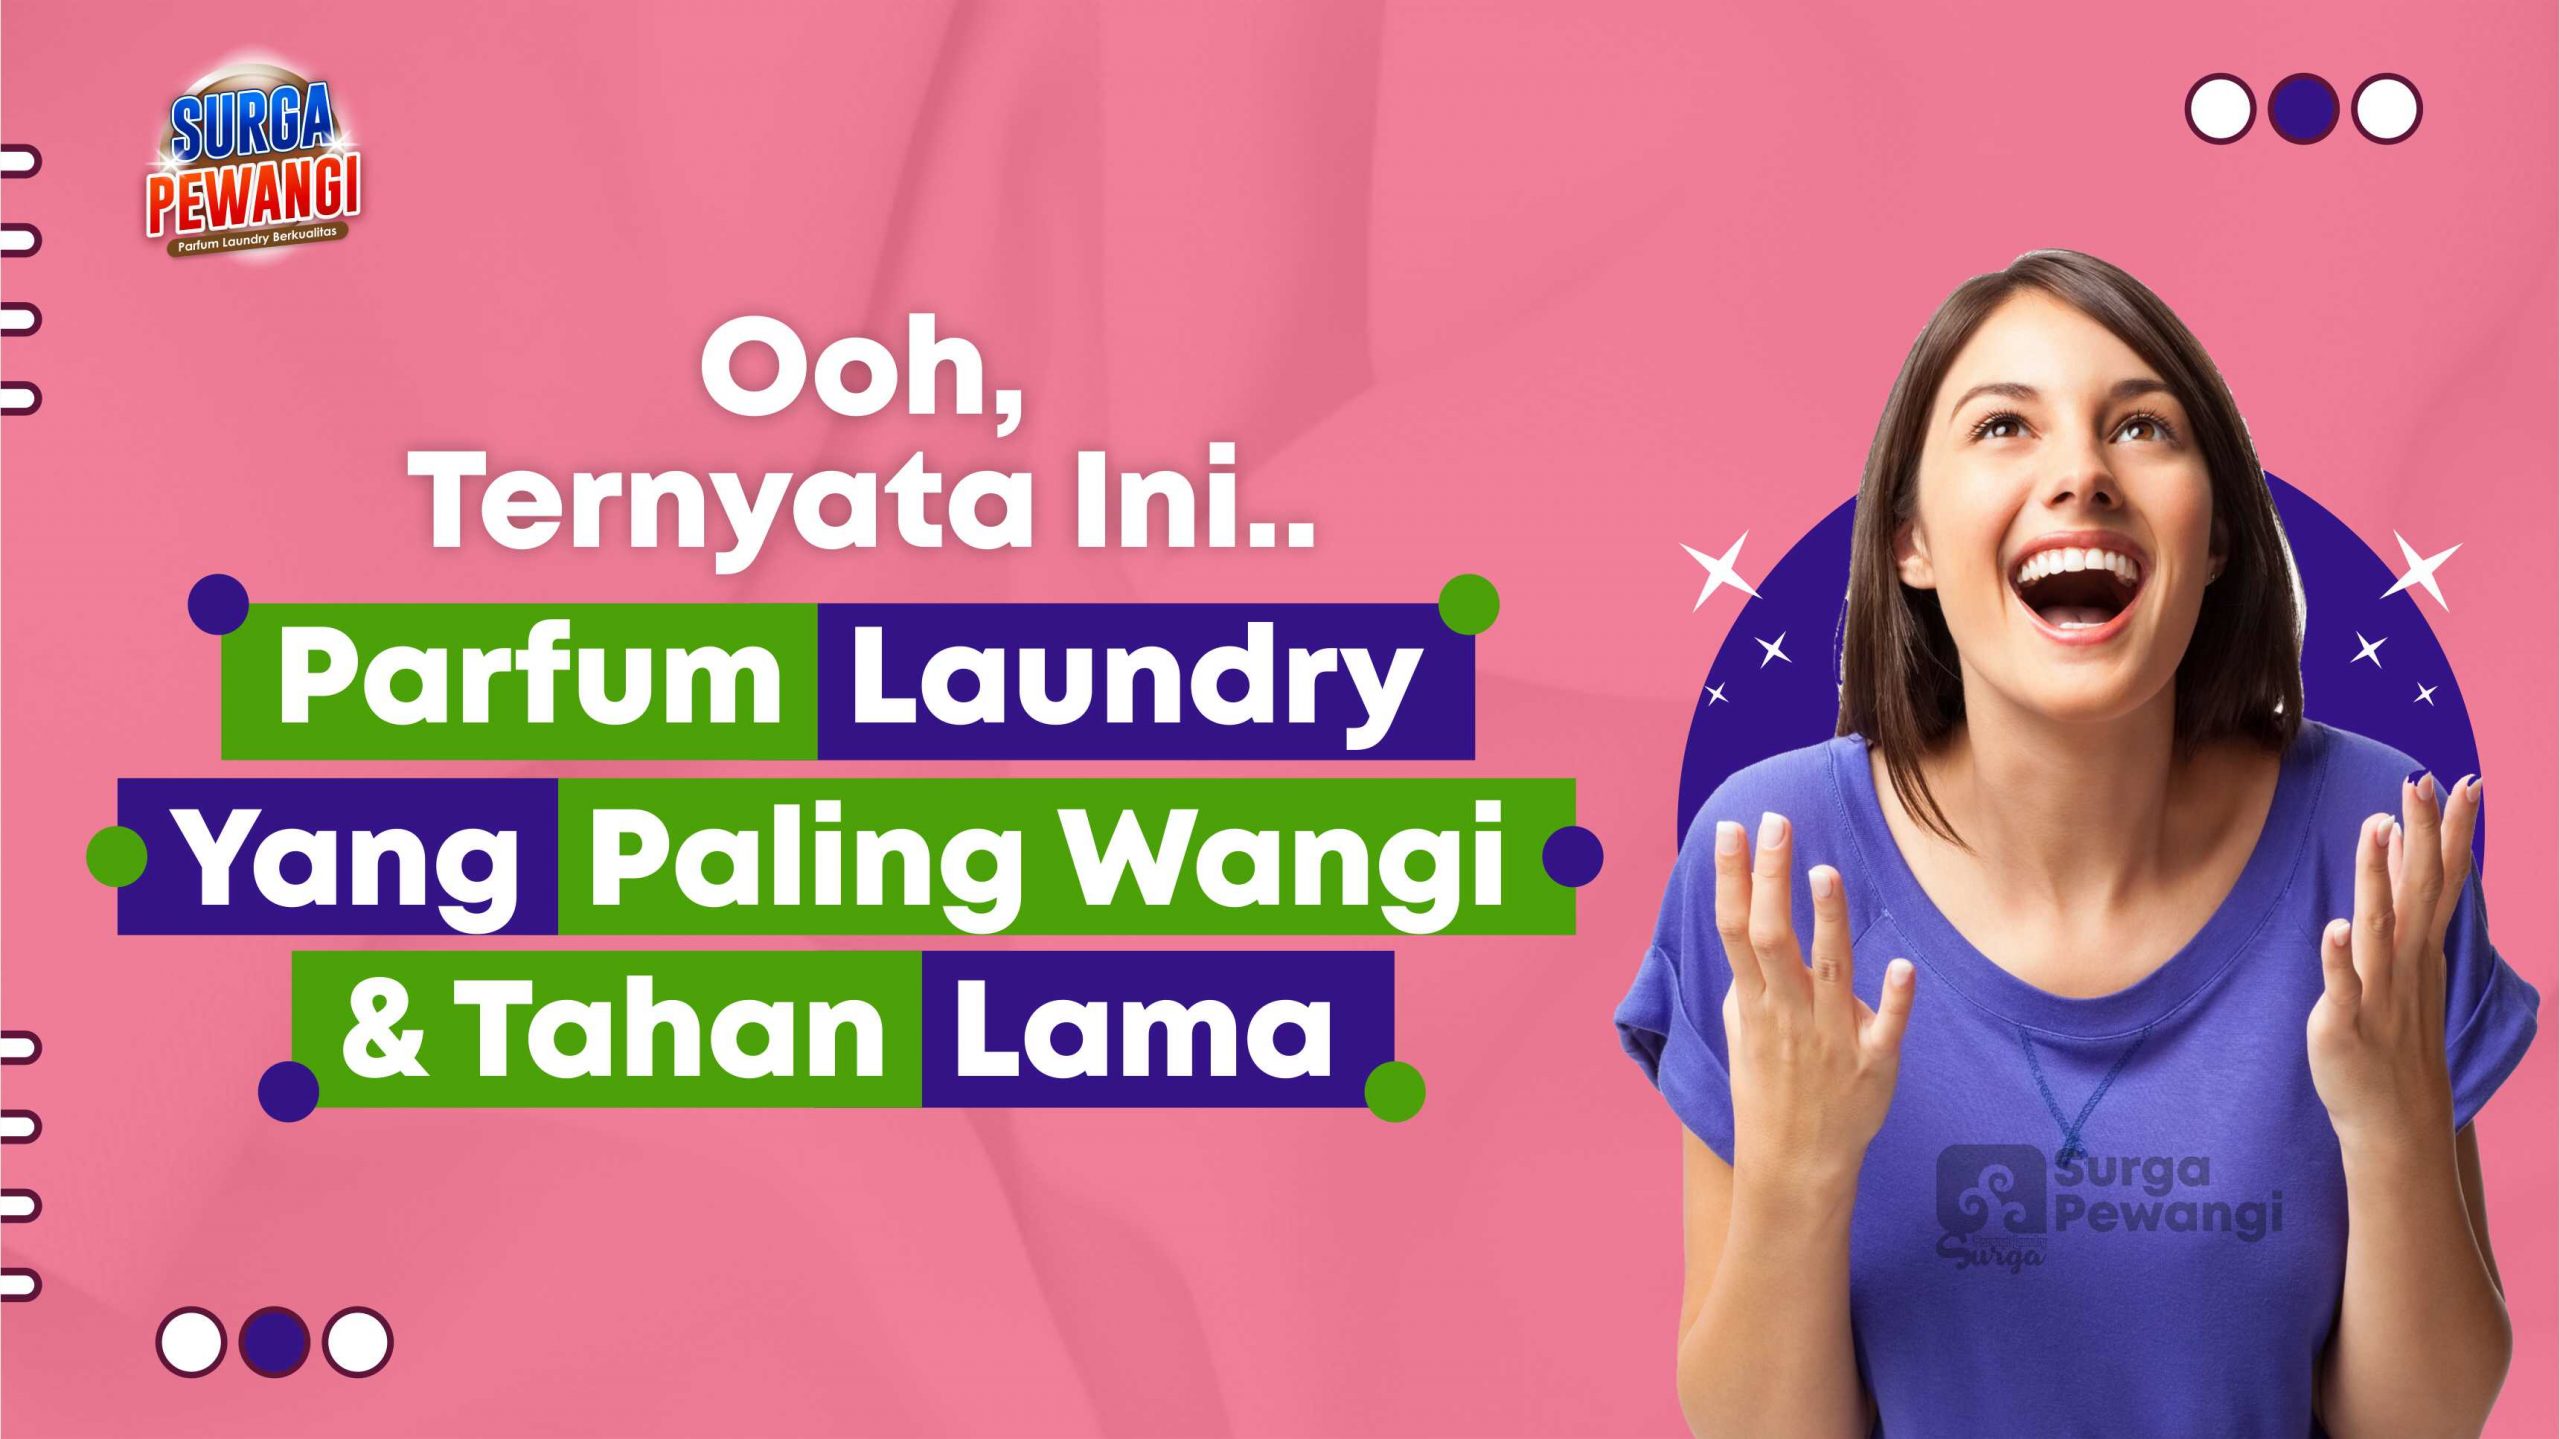 Parfum Laundry Paling Wangi